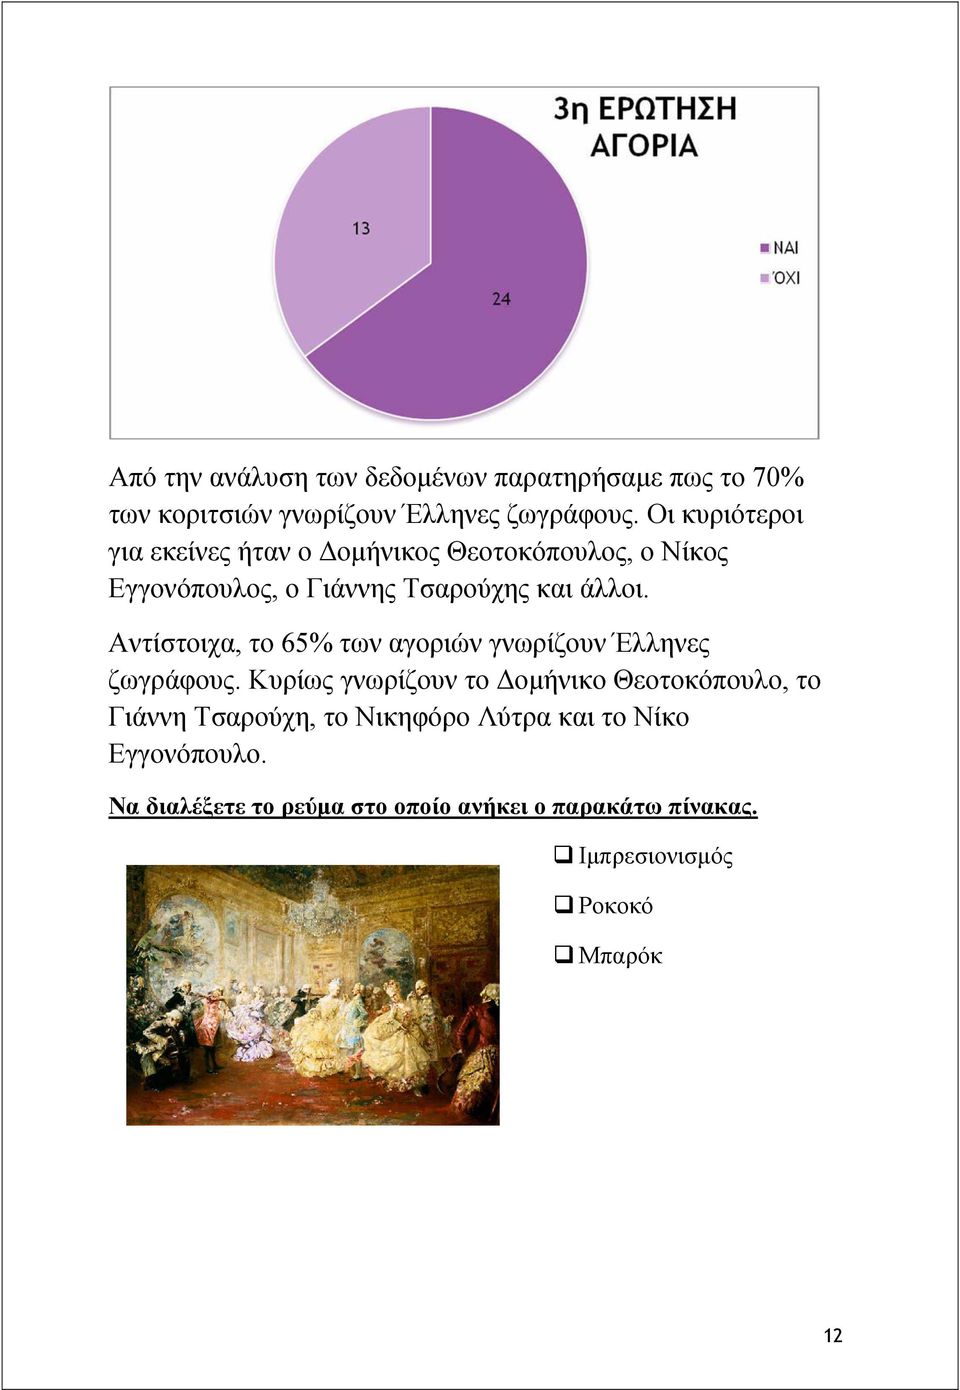 Αντίστοιχα, το 65% των αγοριών γνωρίζουν Έλληνες ζωγράφους.